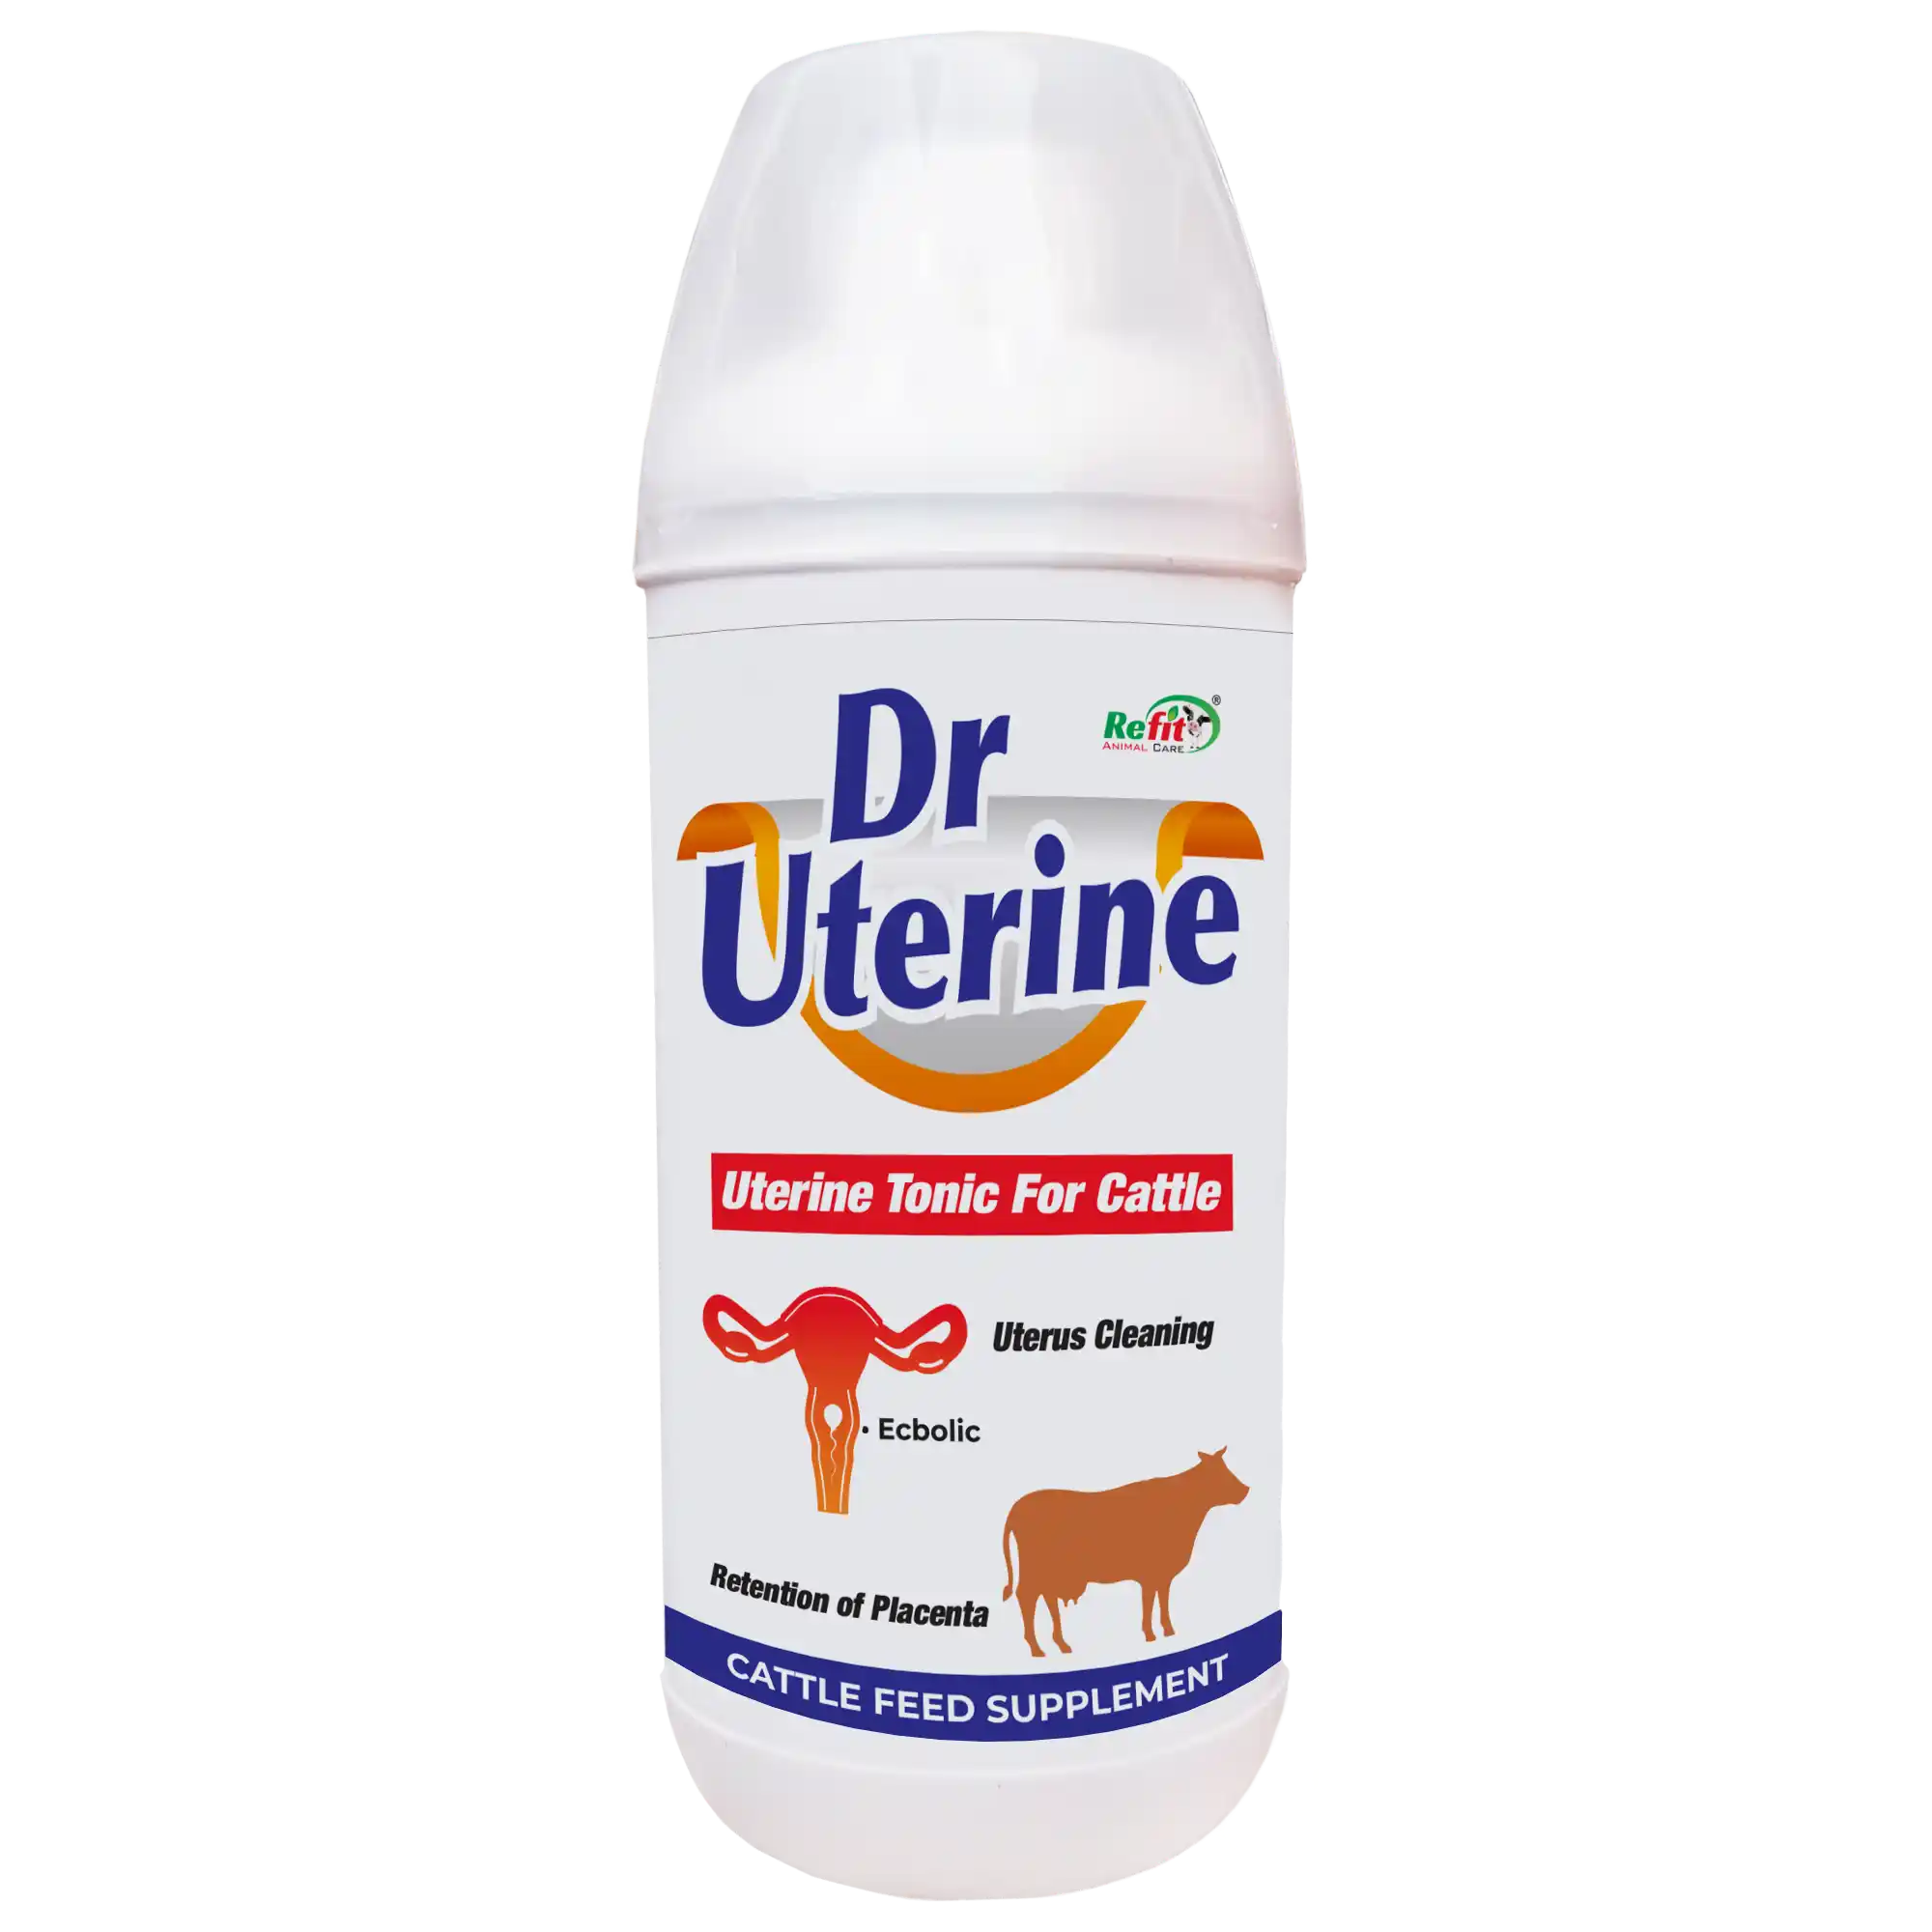 veterinary uterine tonic